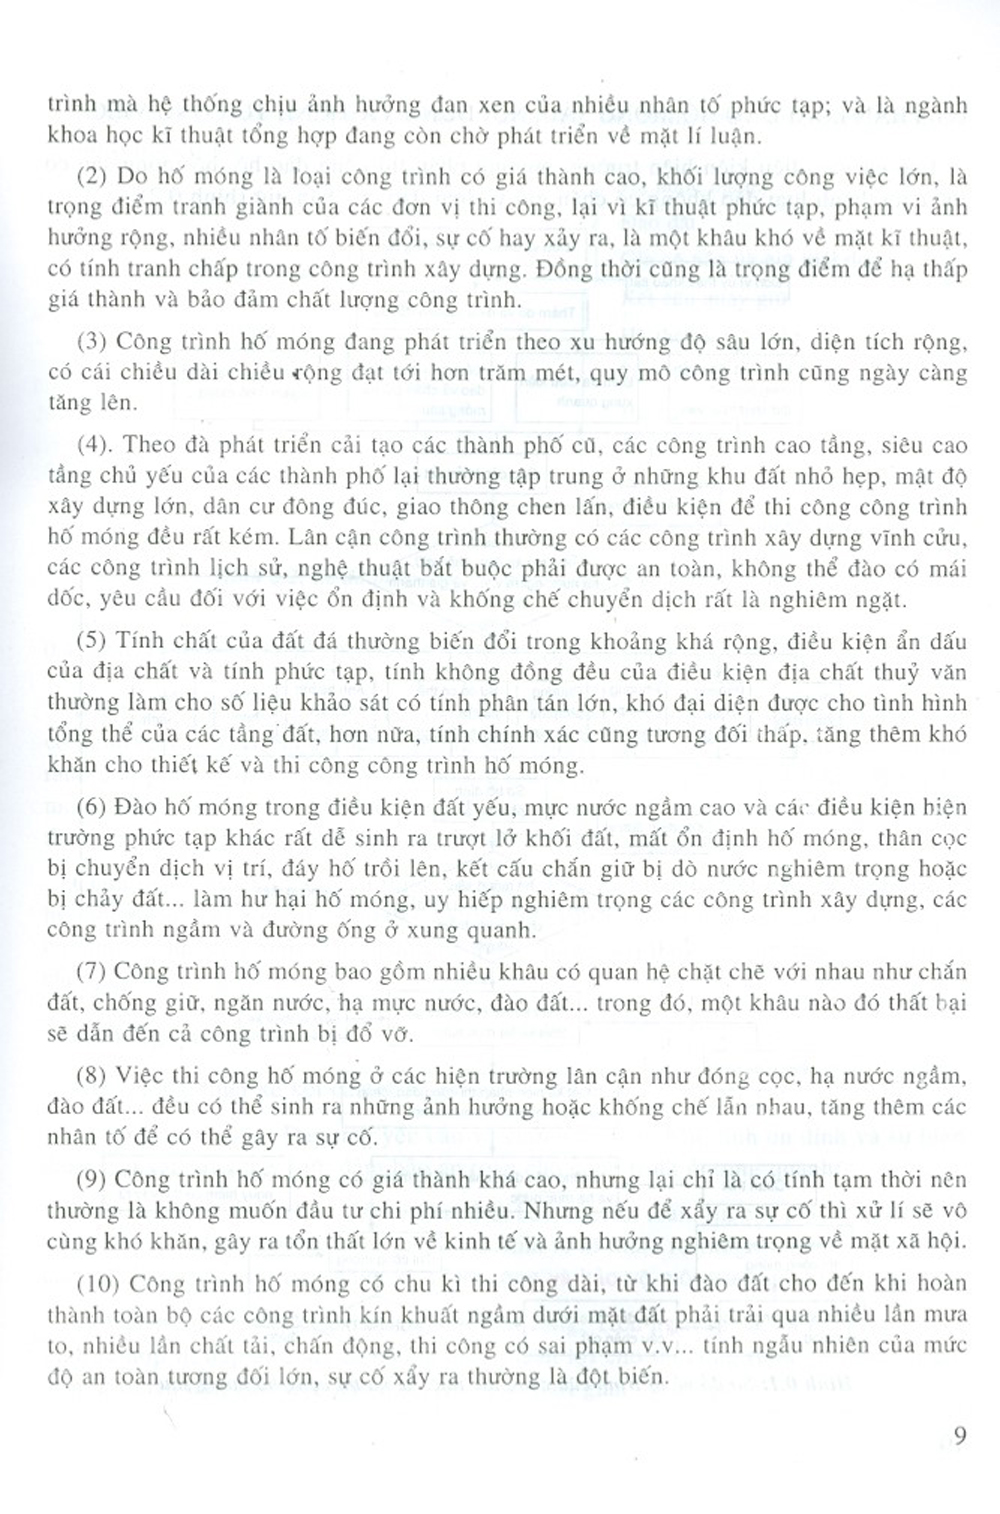 Thiết Kế Và Thi Công Hố Móng Sâu (Tái bản năm 2023) - PGS.TS. Nguyễn Bá Kế